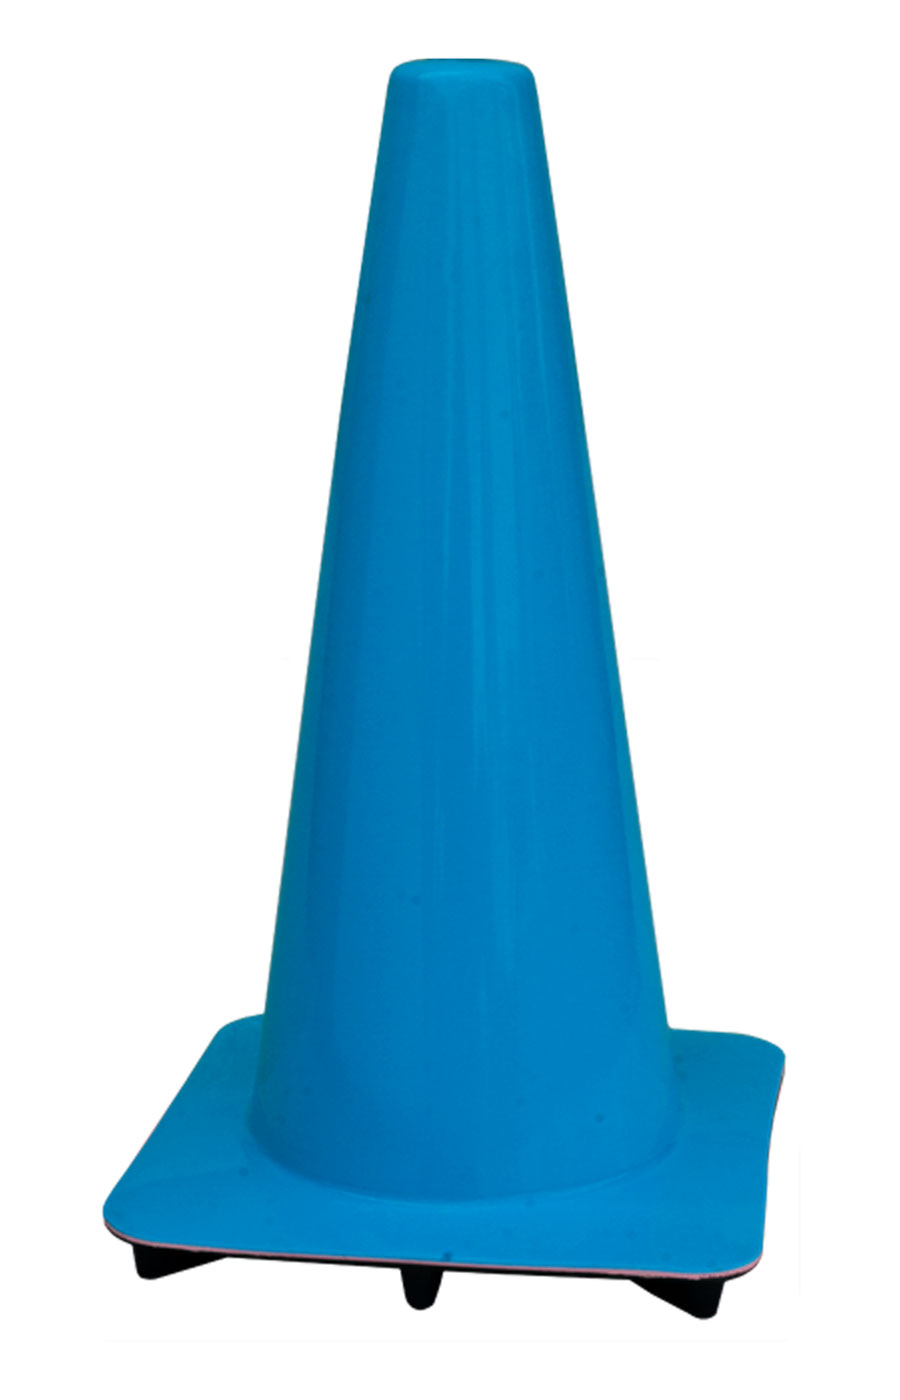 18 in.Blue Traffic Cone